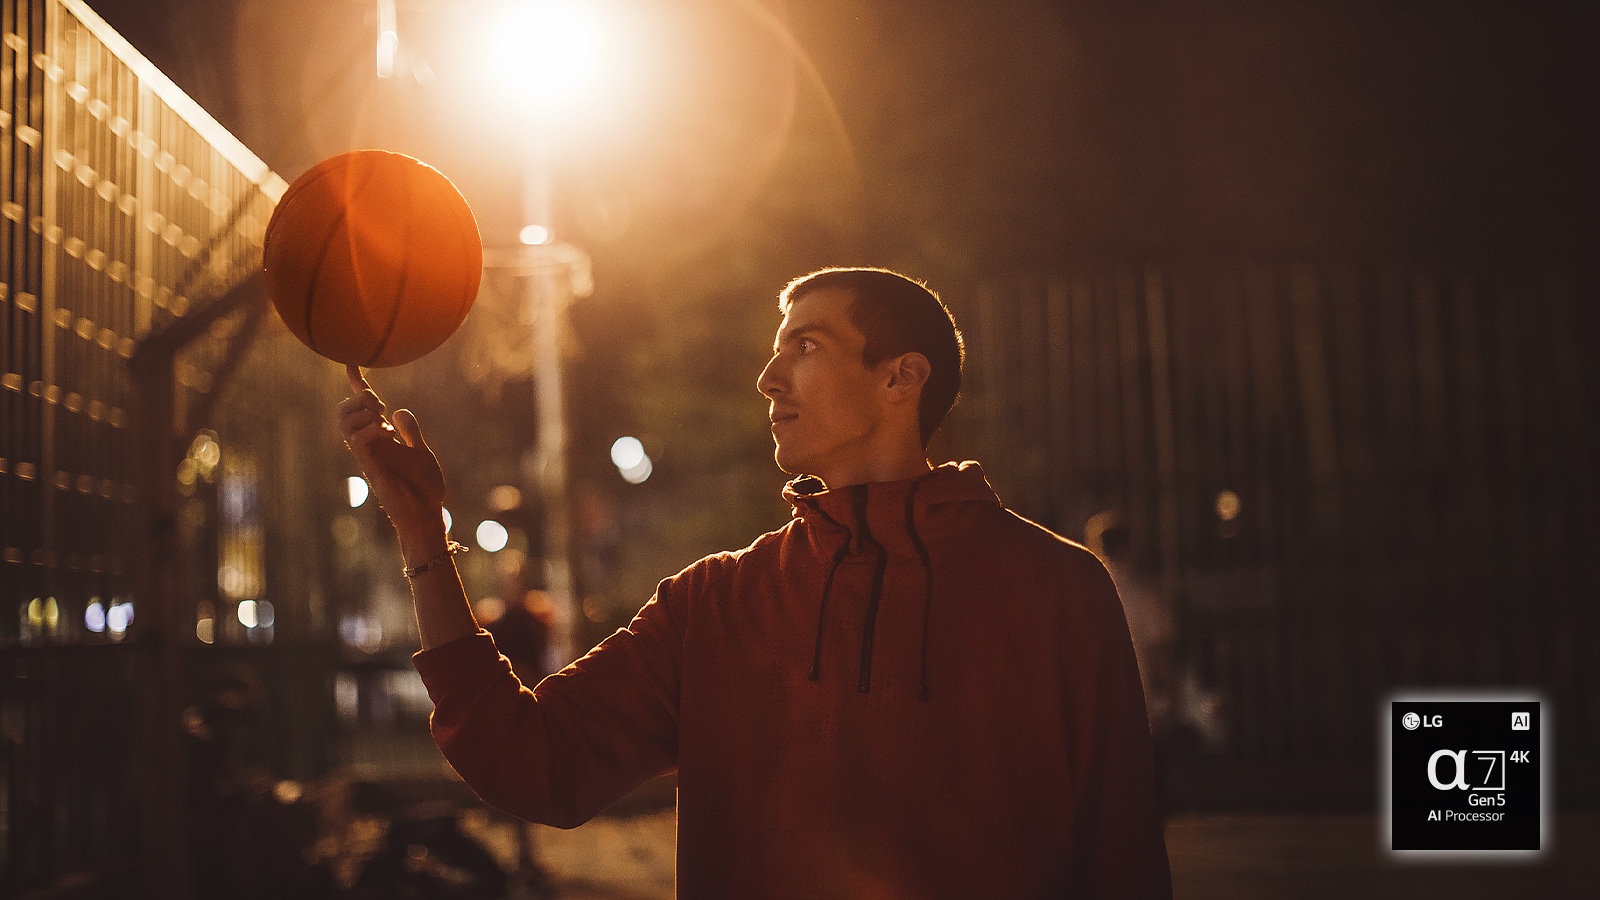 رجل يدير كرة سلة على إصبعه في ملعب كرة سلة خلال الليل